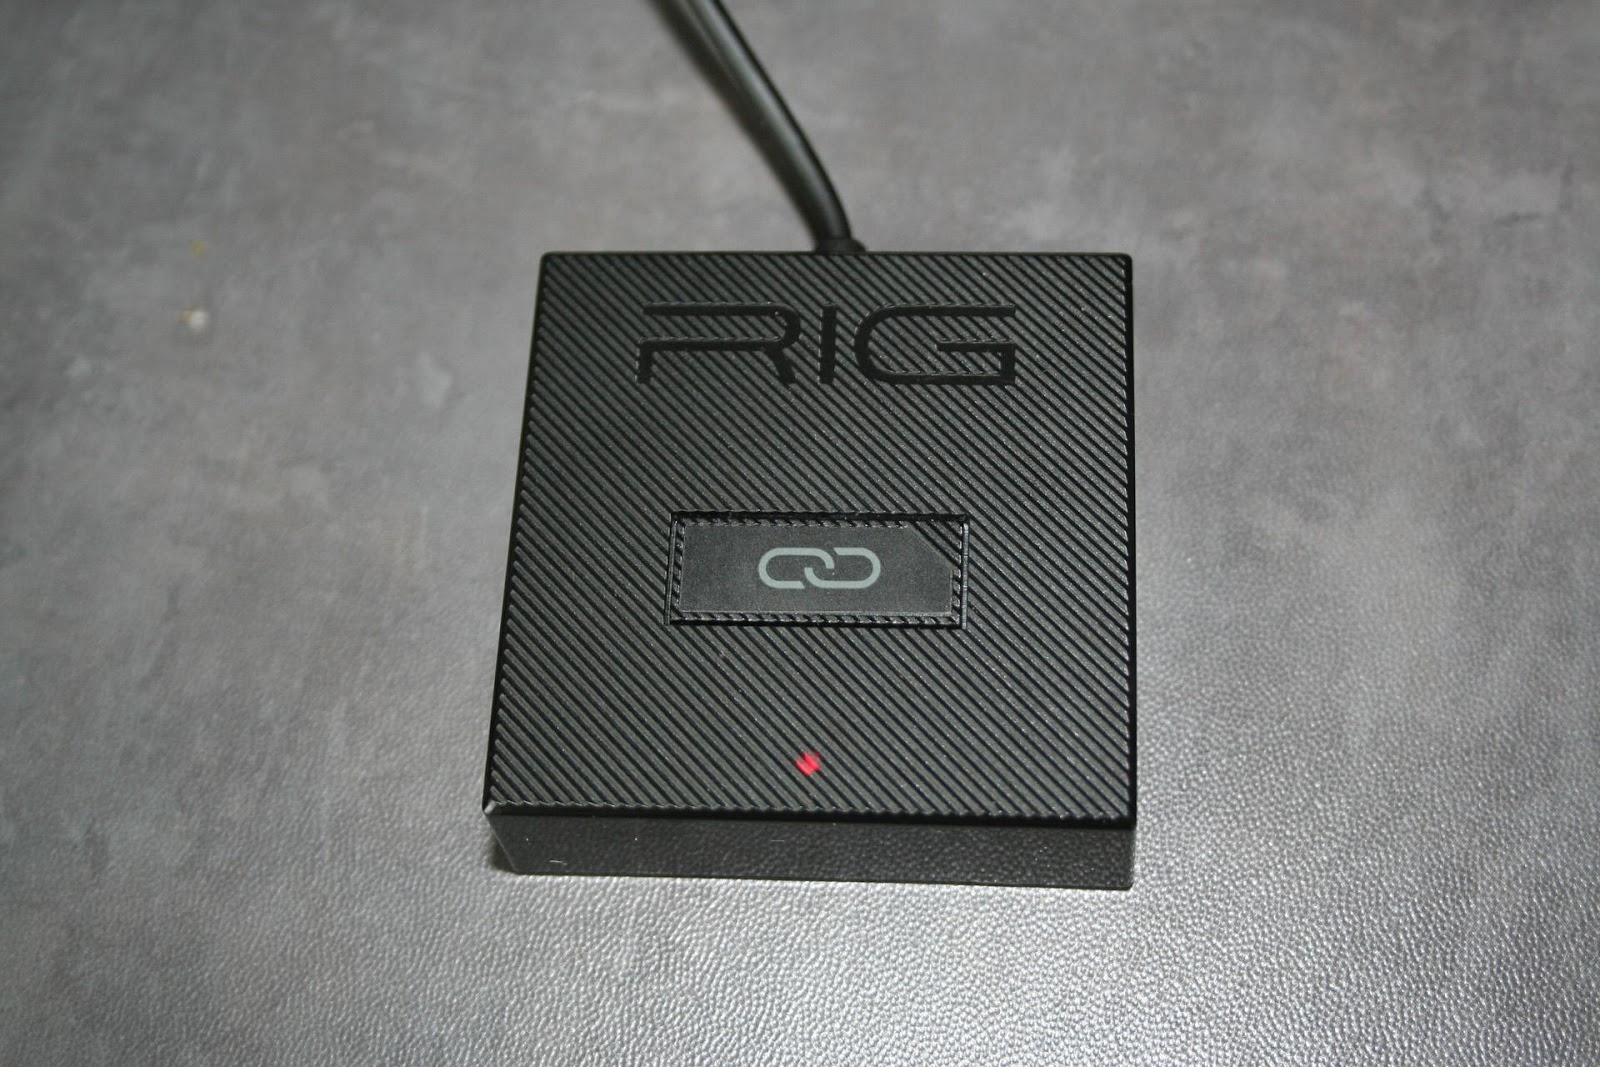 Test du casque Gaming PC sans-fil Plantronics RIG 700HD